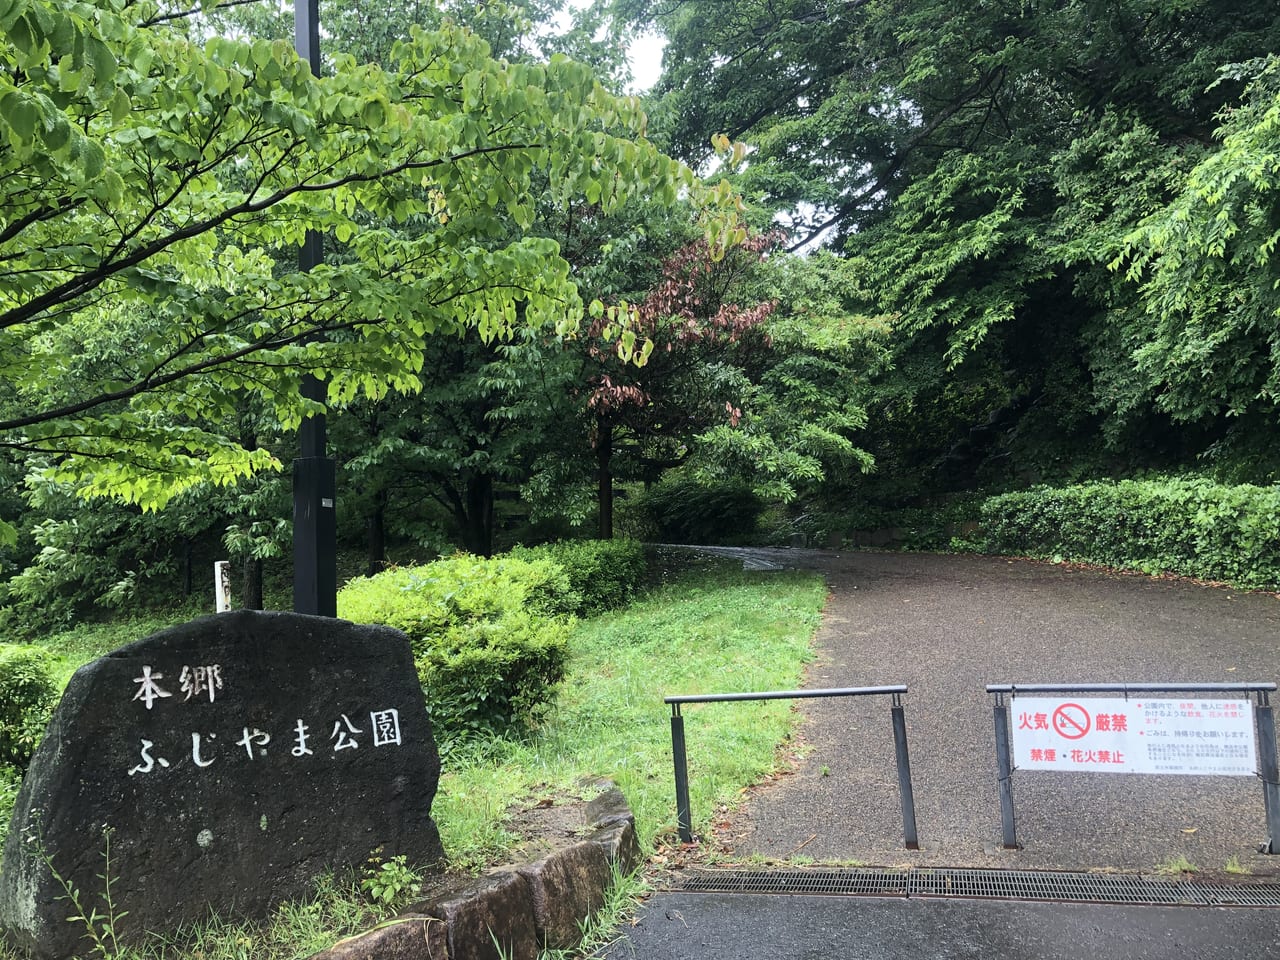 本郷ふじやま公園の入り口